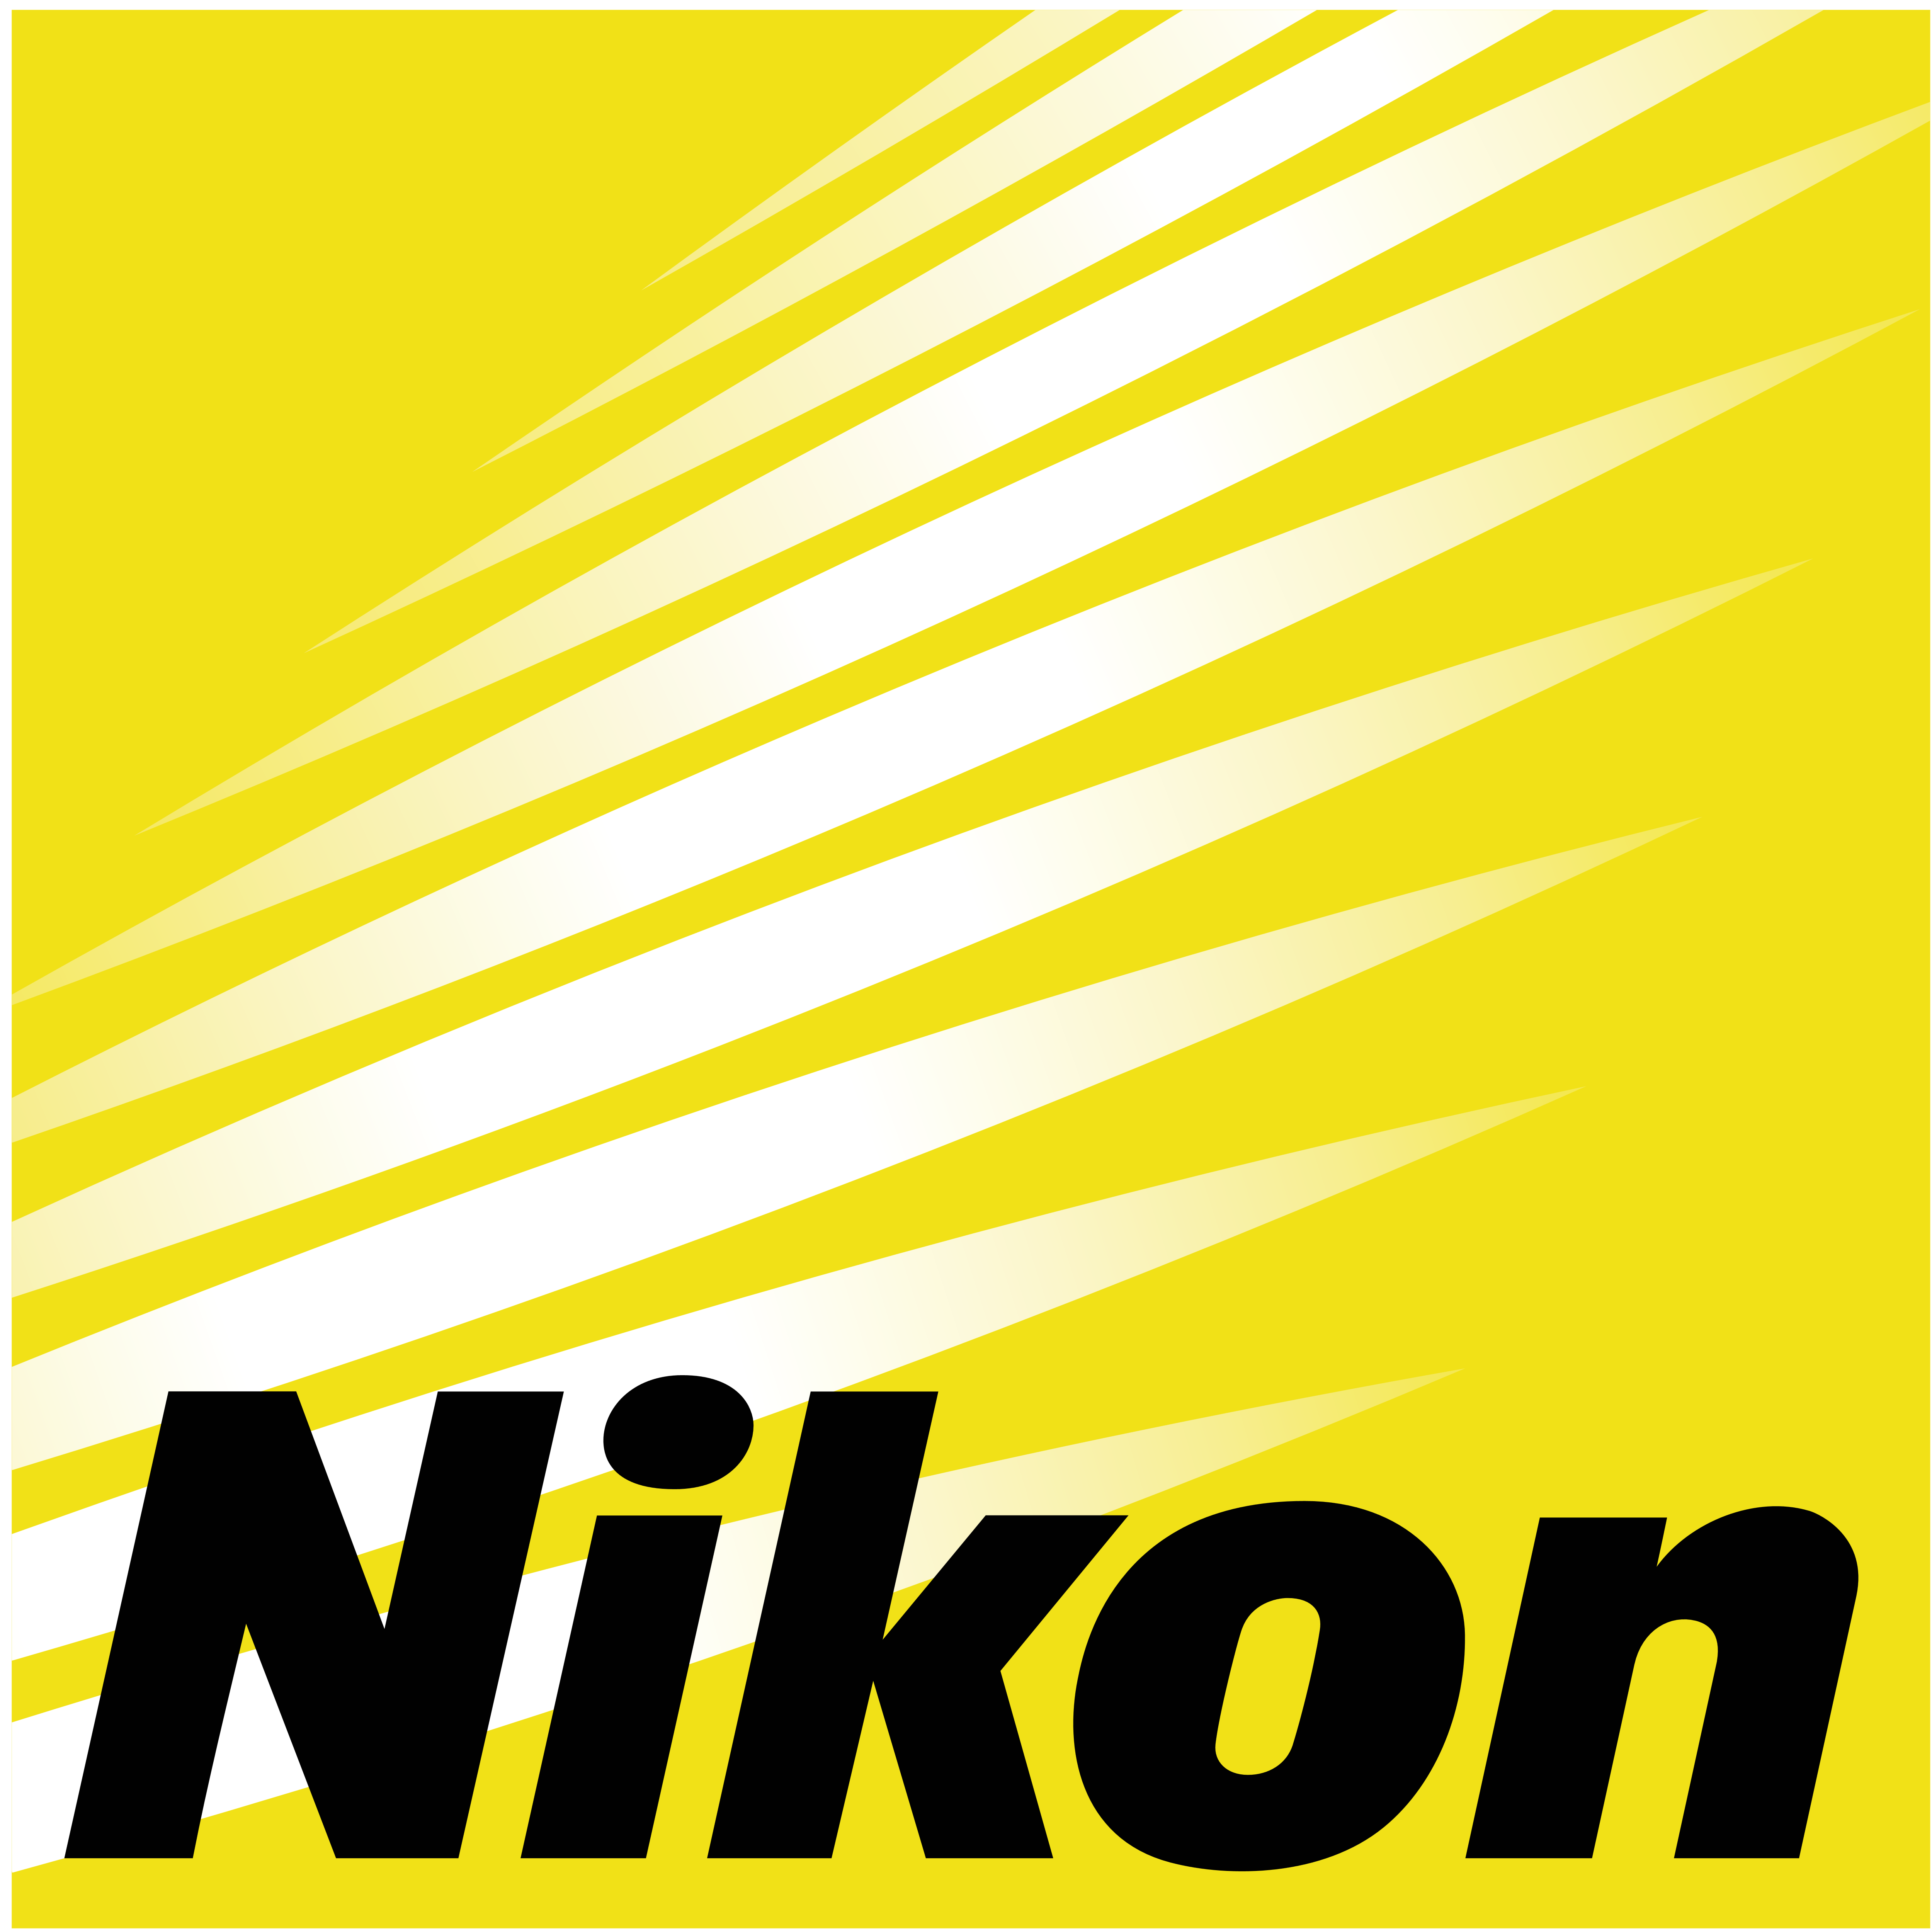 Nikon Logo Vectors Free Downl